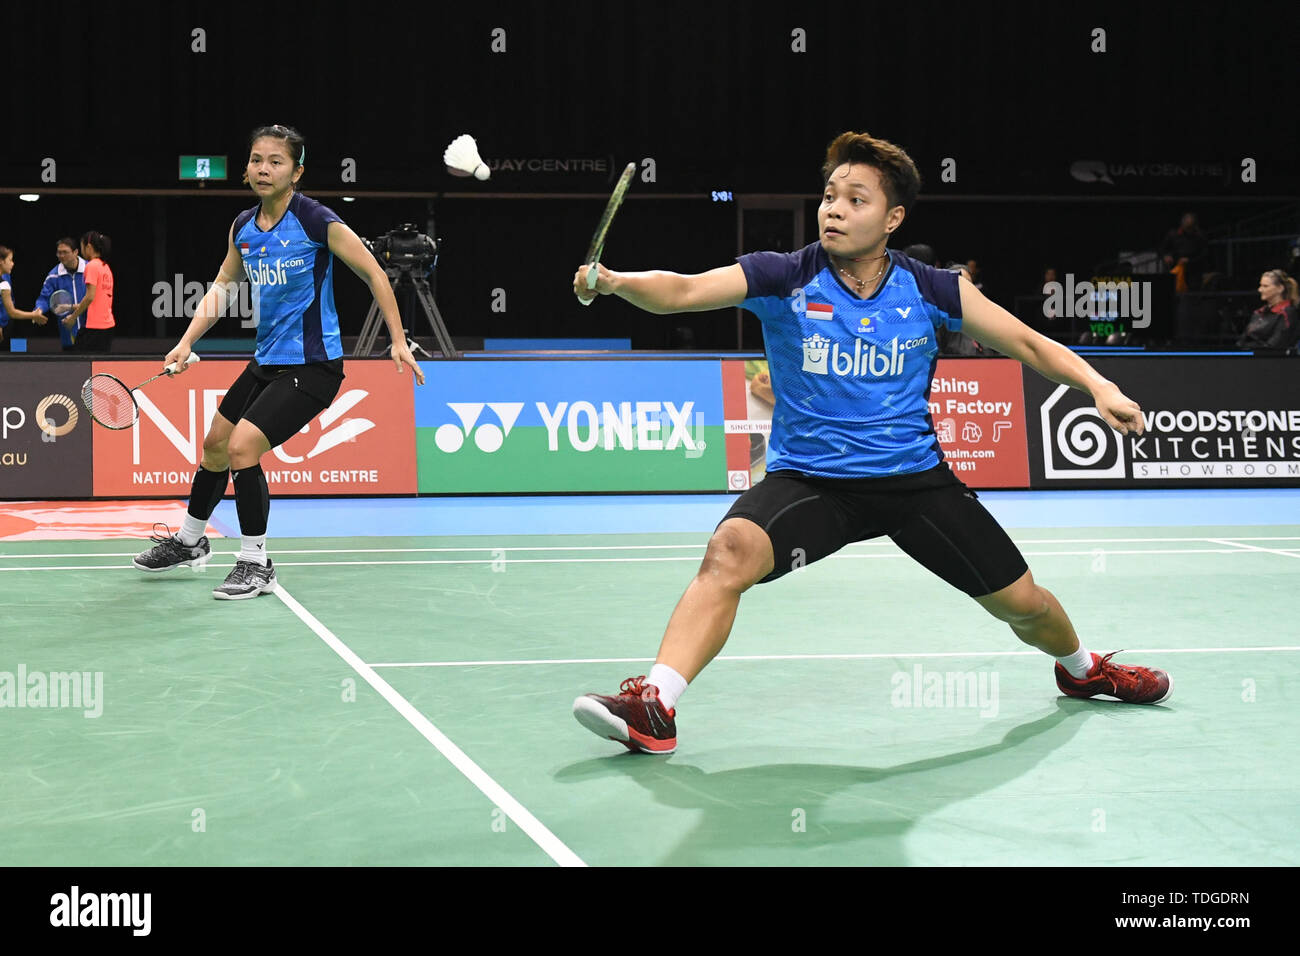 Apriyani Rahayu und Graysia Polii (Indonesien) in Aktion während der 2019 Doppel Viertelfinale australische Badminton Open gesehen Match gegen Mayu Matsumoto und Wakana Nagahara (Japan). Rahayu und Polii gewann das Match 21-19, 21-18. Stockfoto